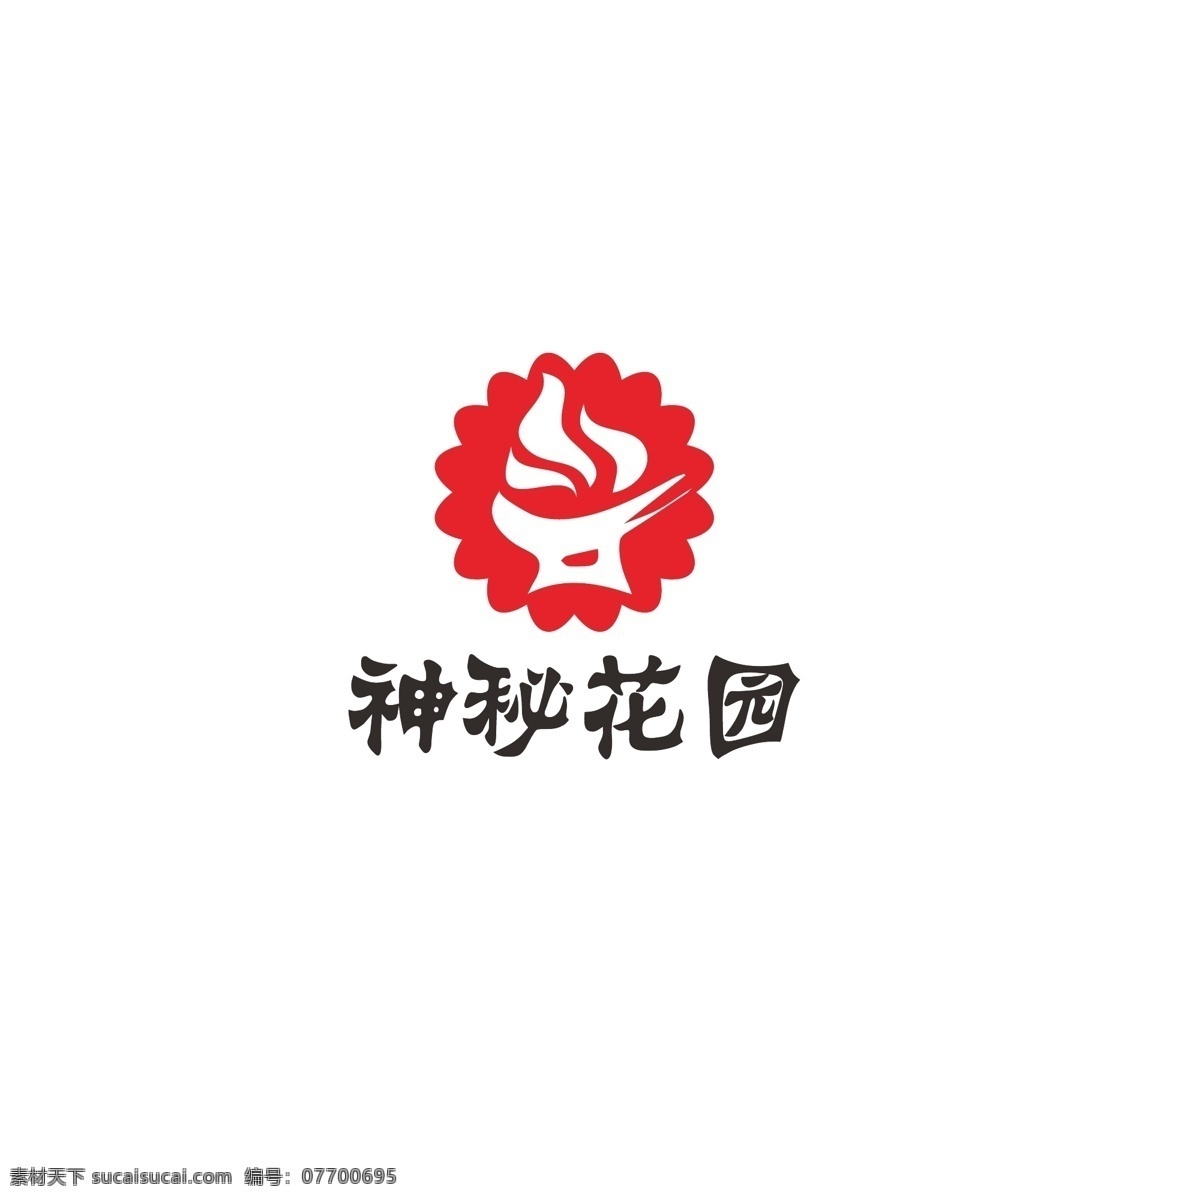 神秘 花园 logo 简约 火锅 食品